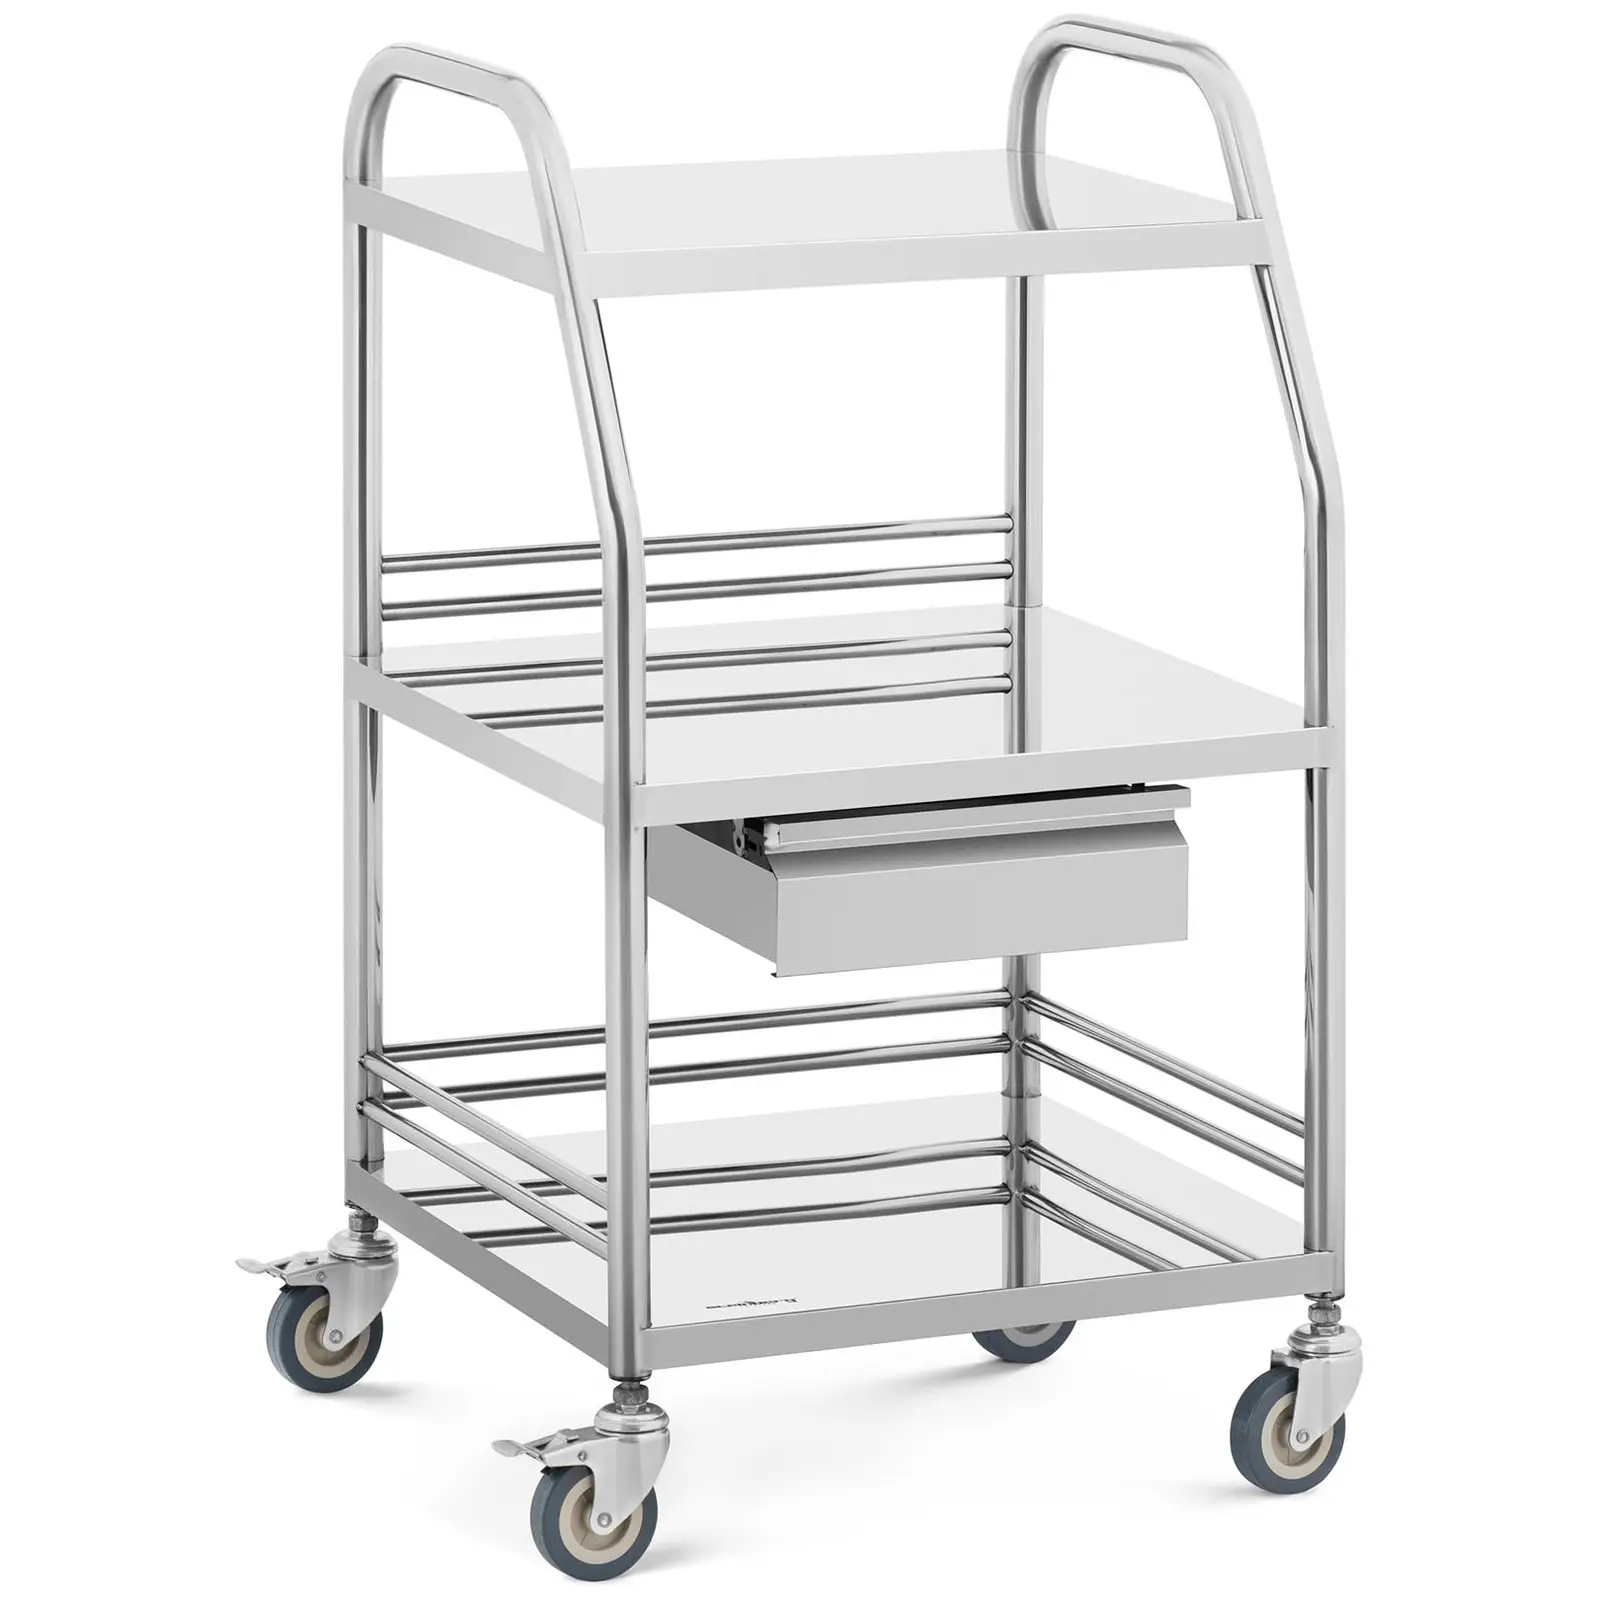 Laboratorinis vežimėlis - nerūdijantis plienas - 3 lentynos 41 x 35 x 2,5 cm - 1 stalčius - 30 kg